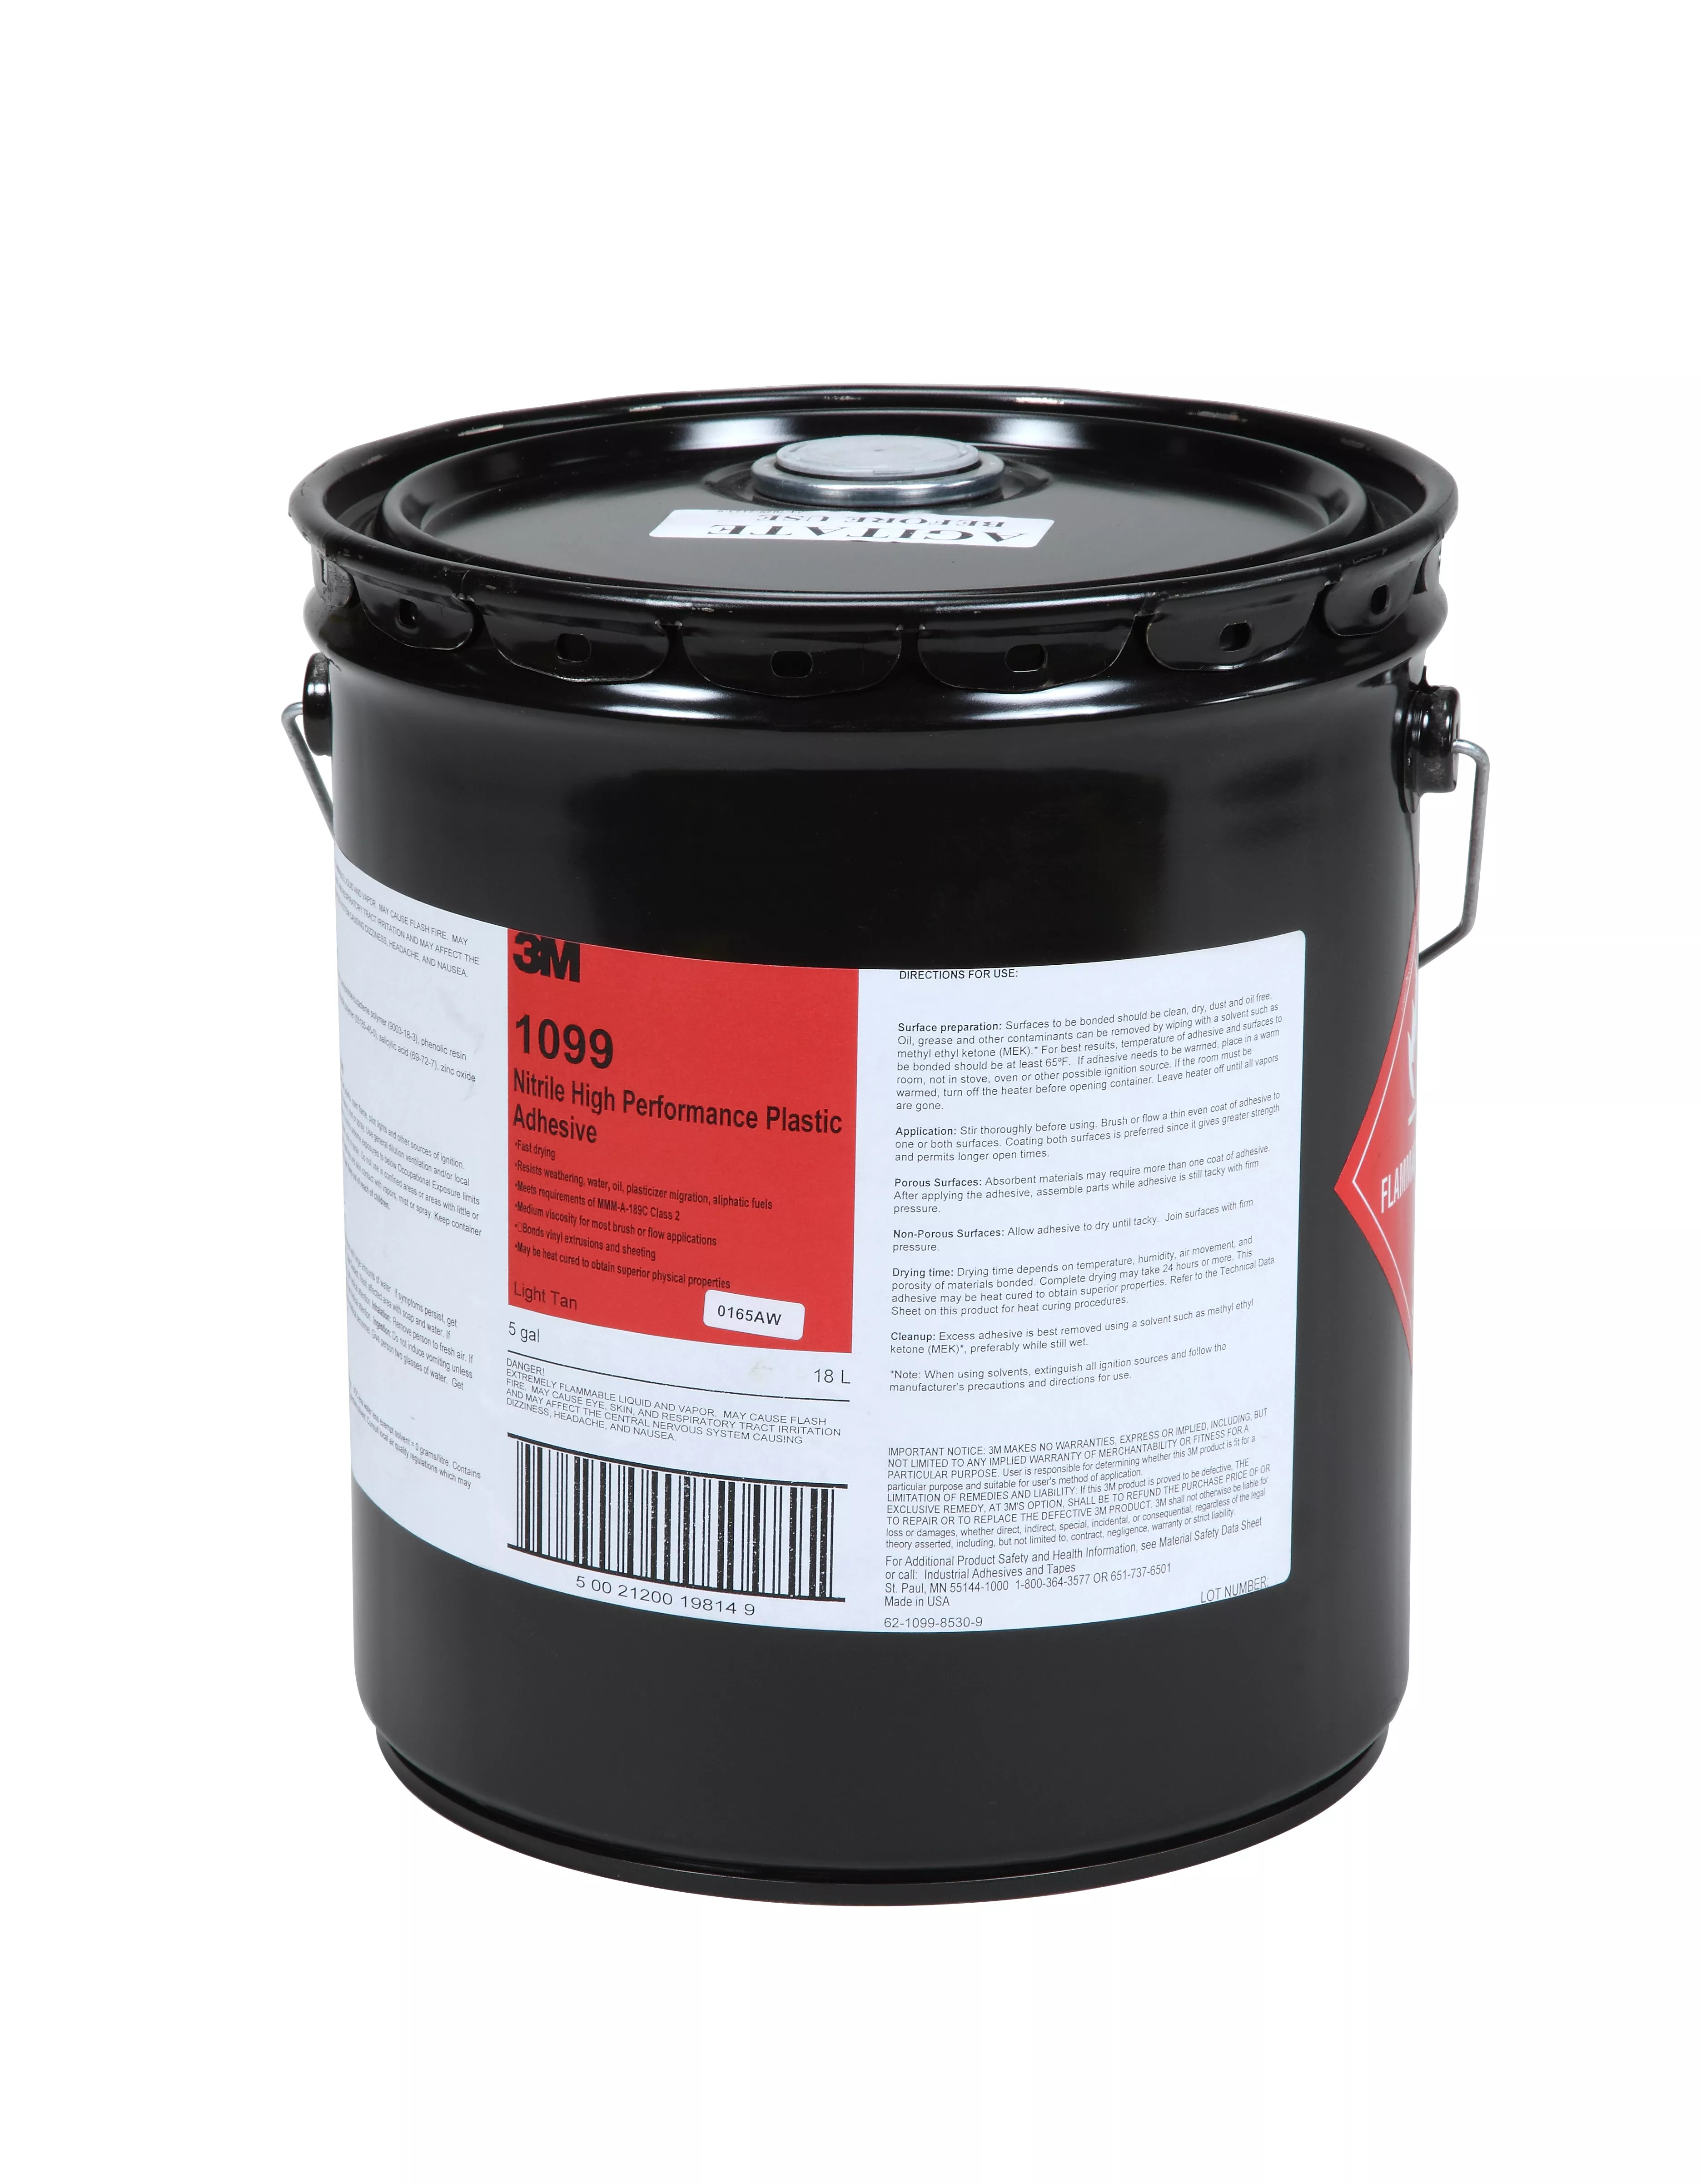 3M™ Nitrile High Performance Plastic Adhesive 1099L, Tan, 5 Gallon Pour
Spout (Pail), 1 Can/Drum